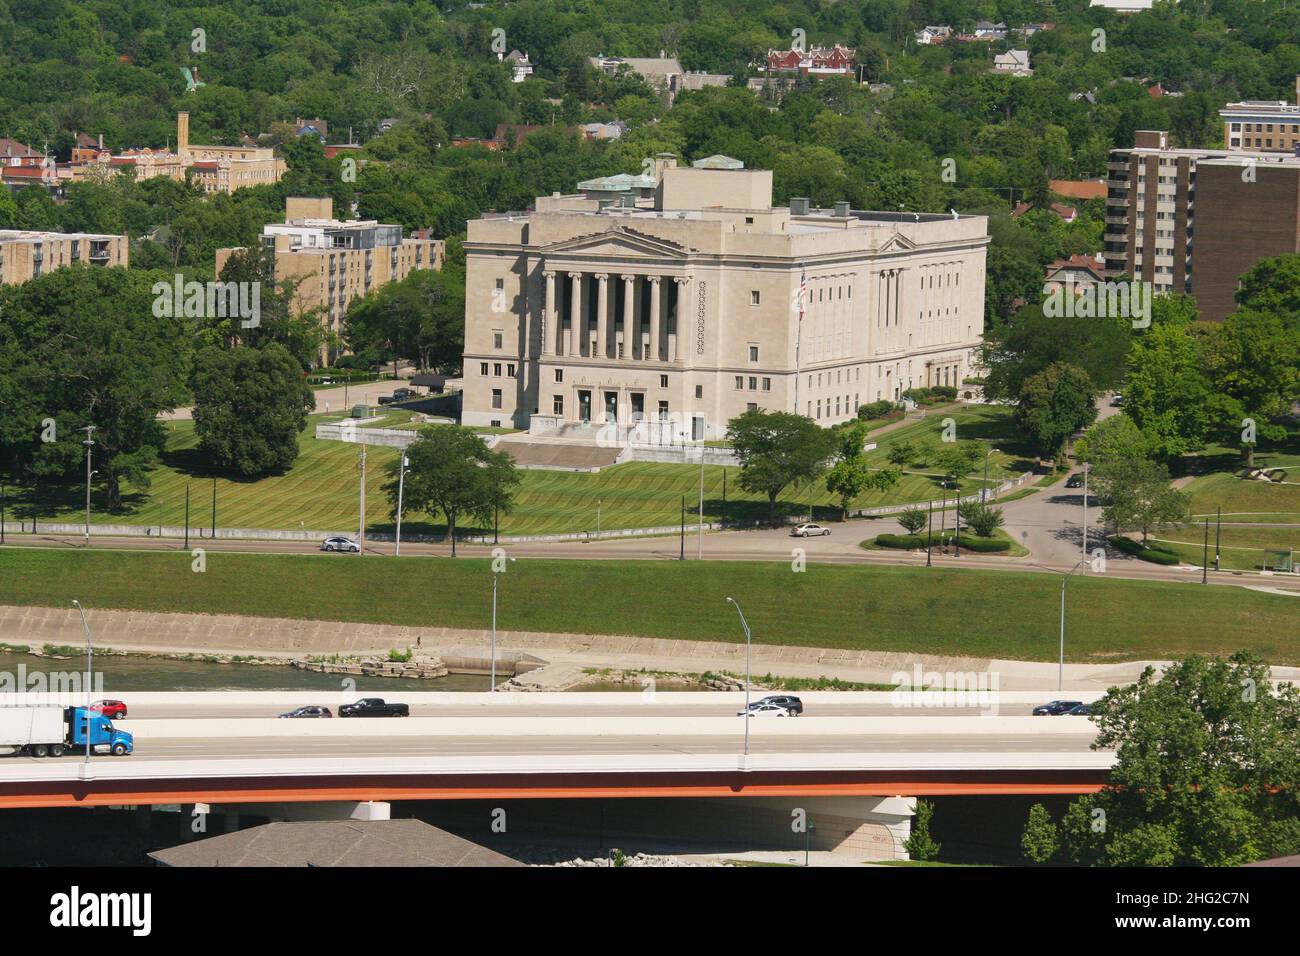 Vue aérienne du temple maçonnique.Avec l'autoroute I-75 juste en face.Dayton, Ohio, États-Unis. Banque D'Images